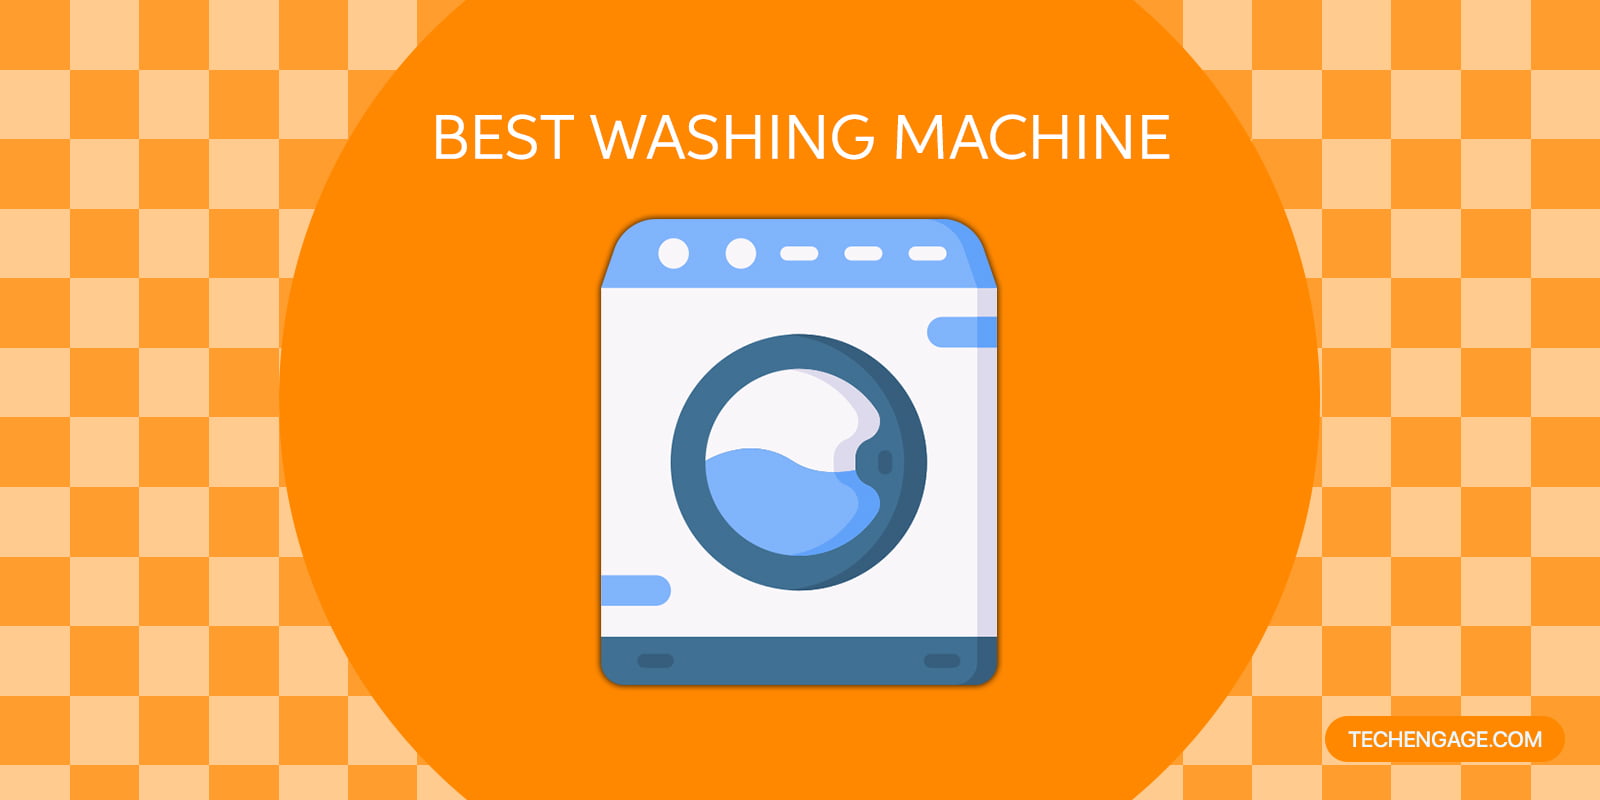 Washing Machines on Amazon